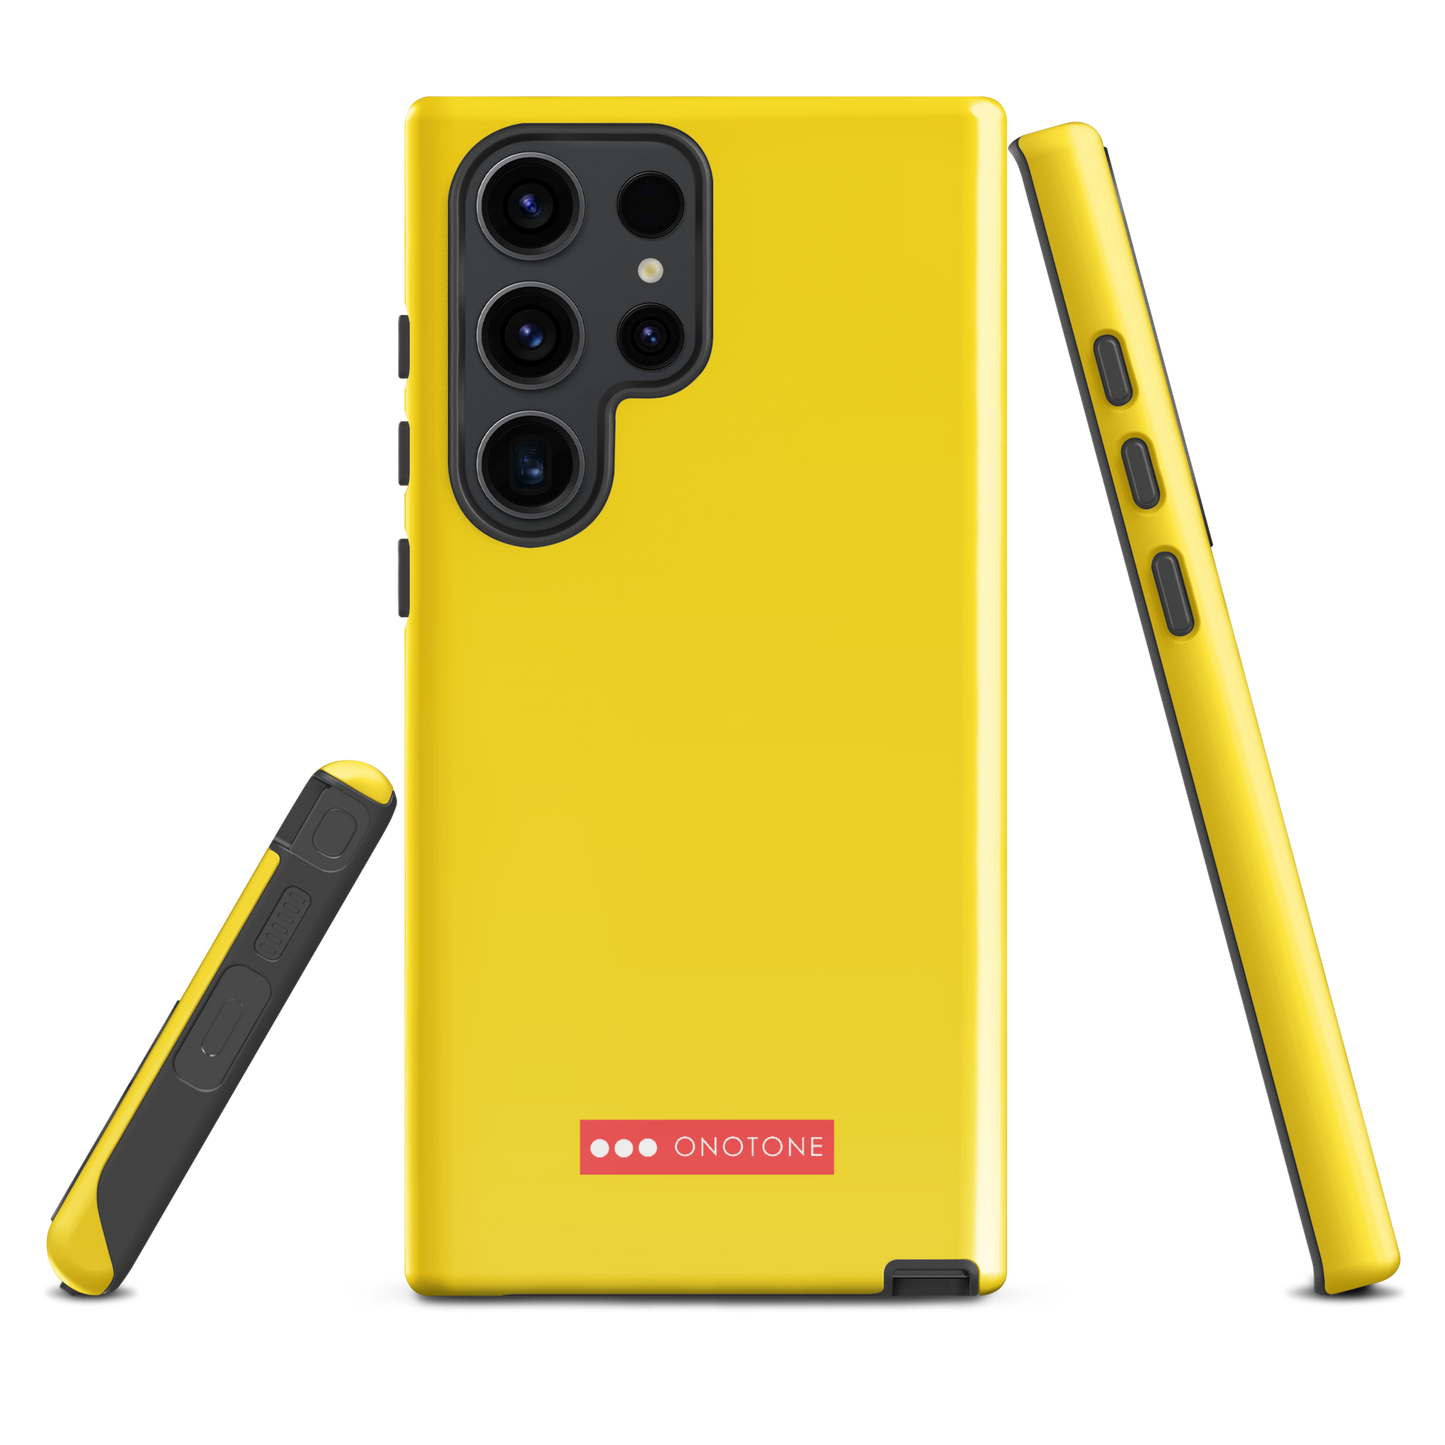 Solid Color Yellow Samsung Galaxy Case - Pantone® 107